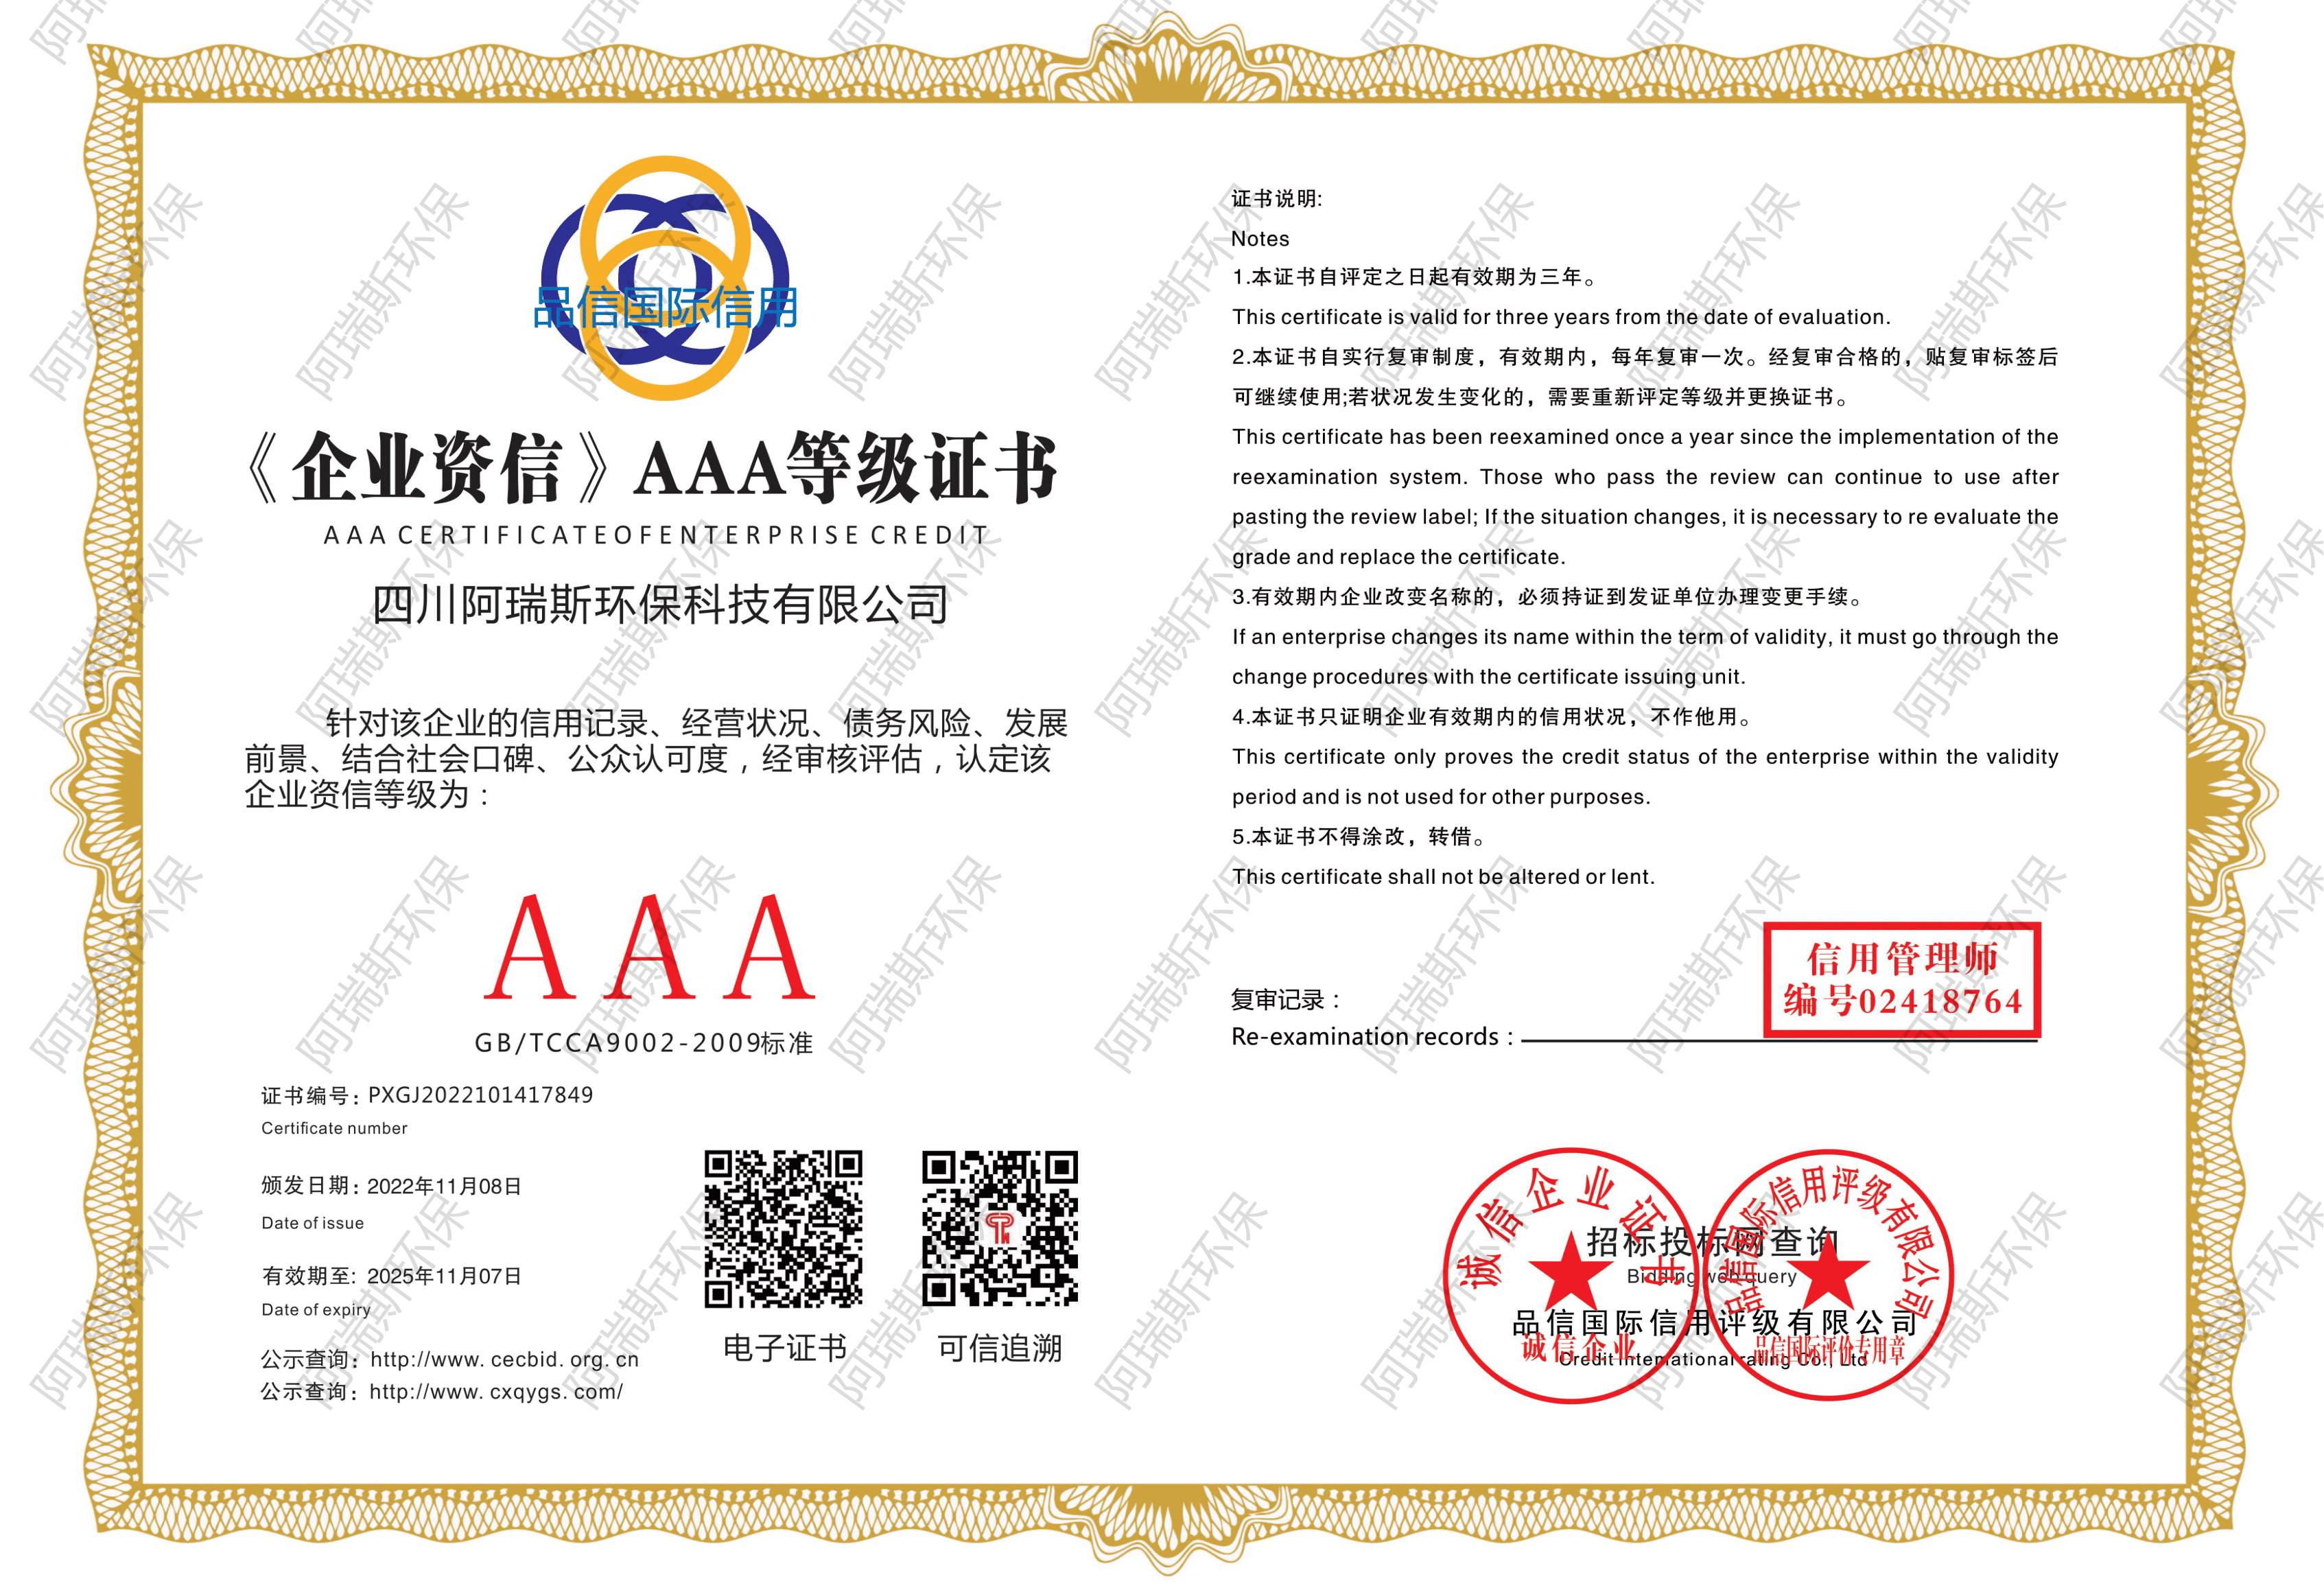 《企业资信》AAA等级证书